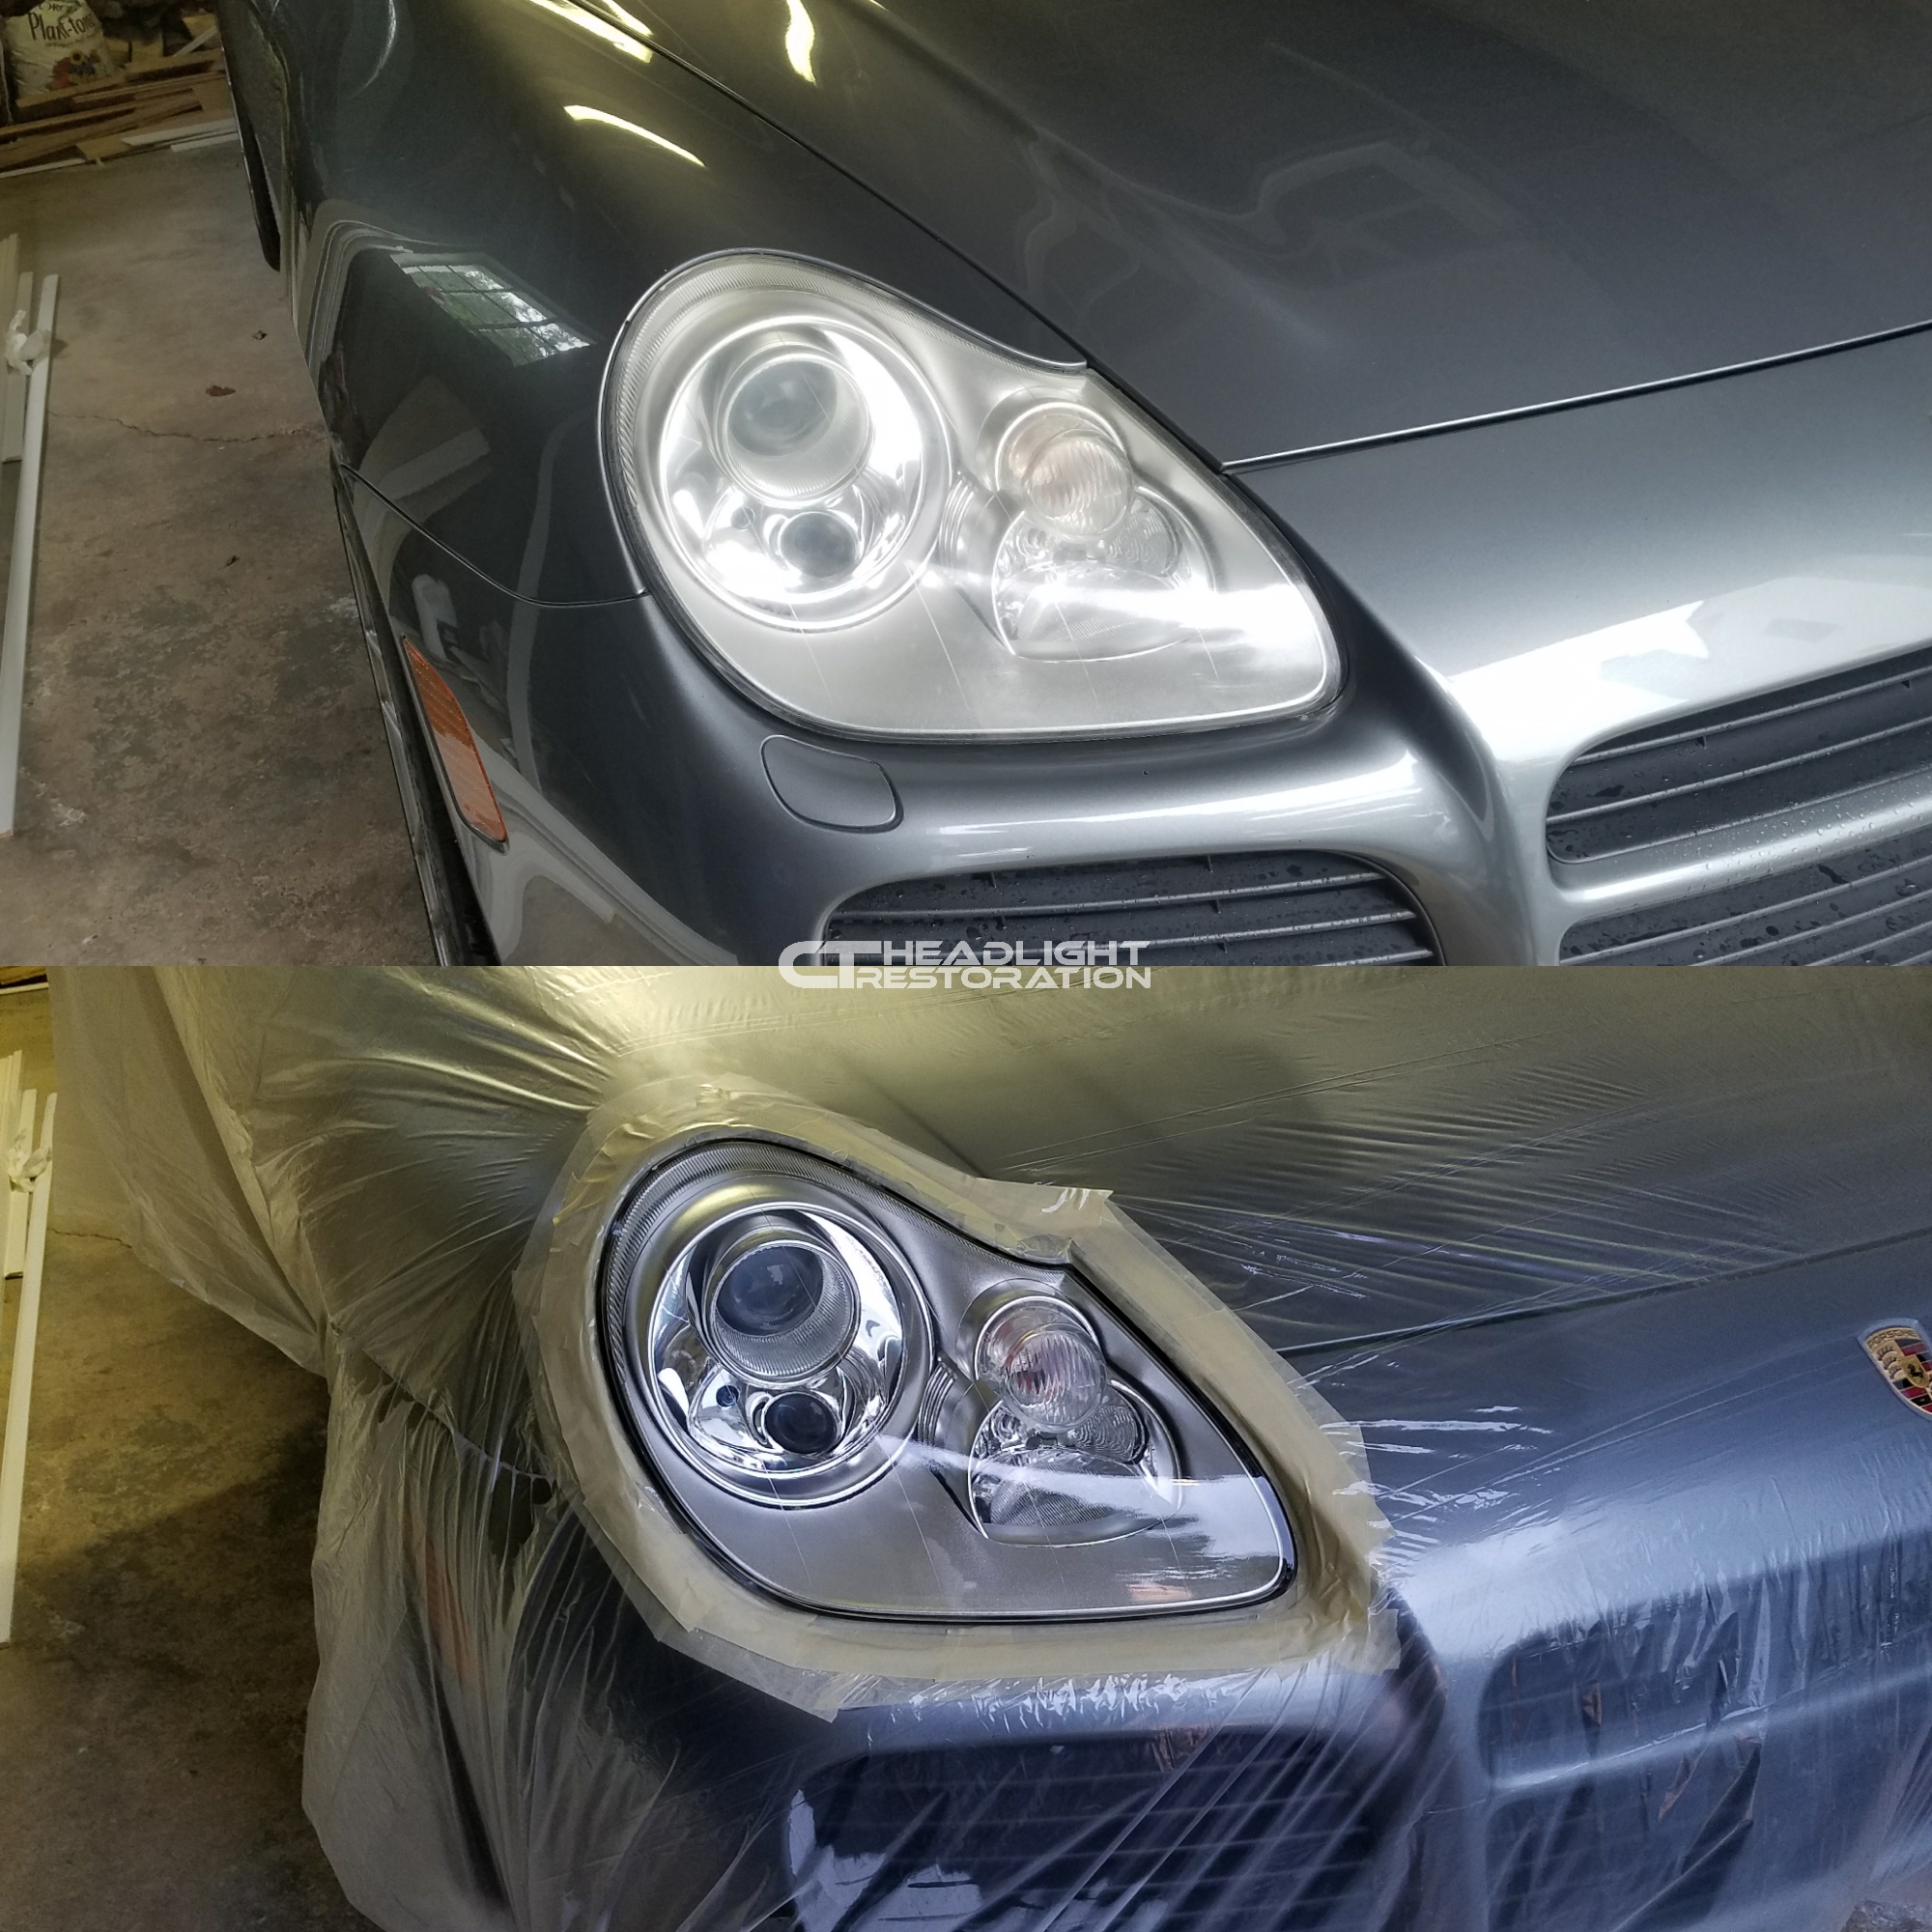 Porsche Cayenne Headlights Restoration.png